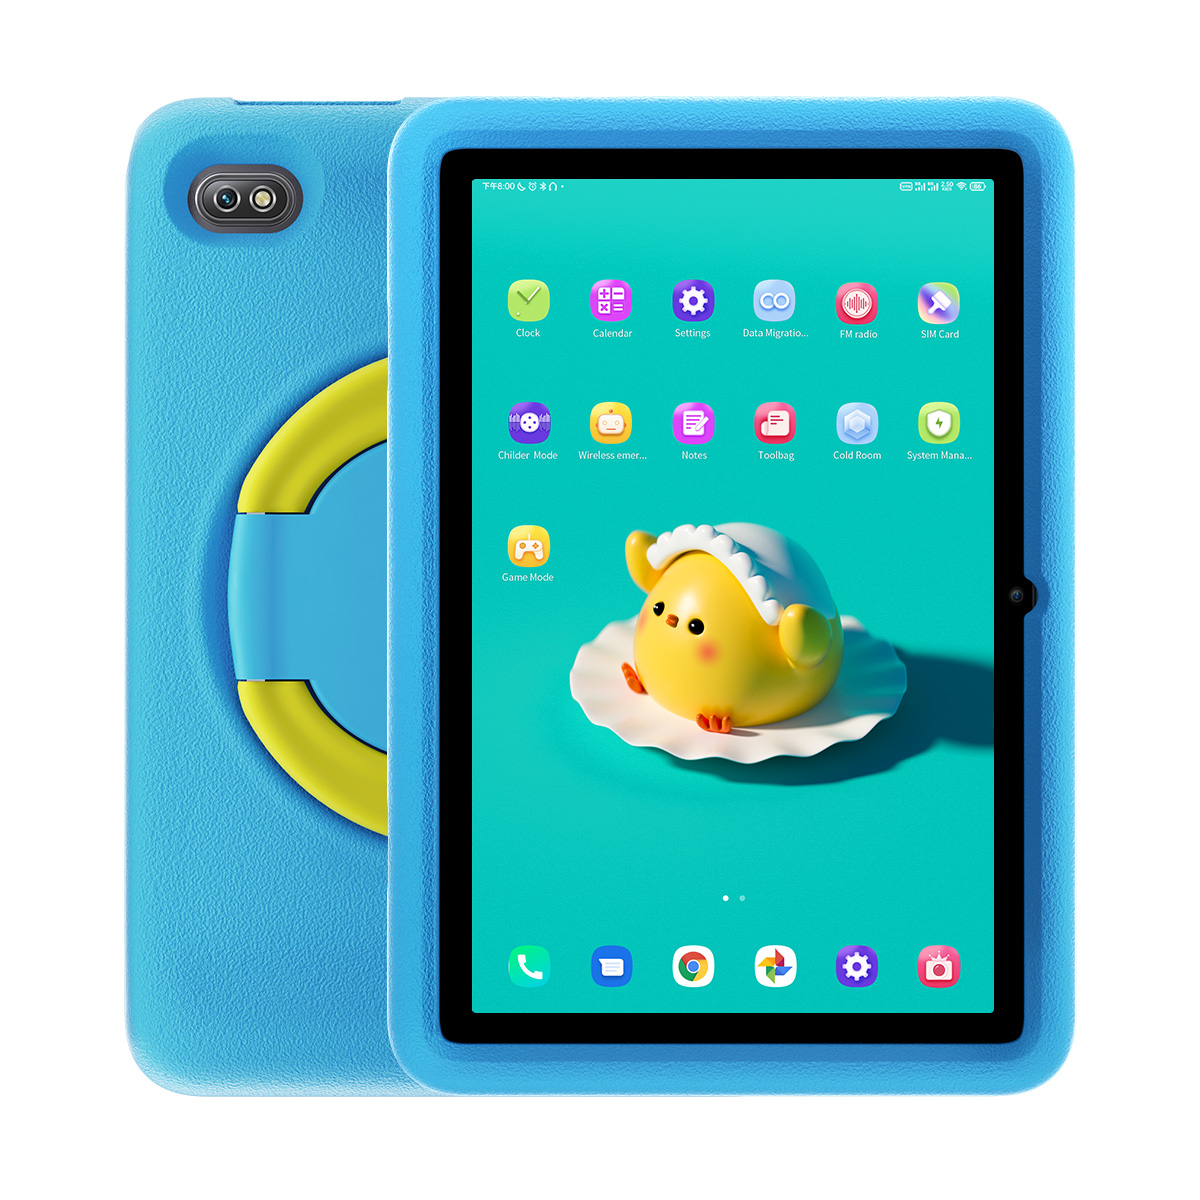 Tablet iGET Blackview TAB G8 Kids Blue dětský tablet pro předškoláky, žáky, děti, modrý, růžový